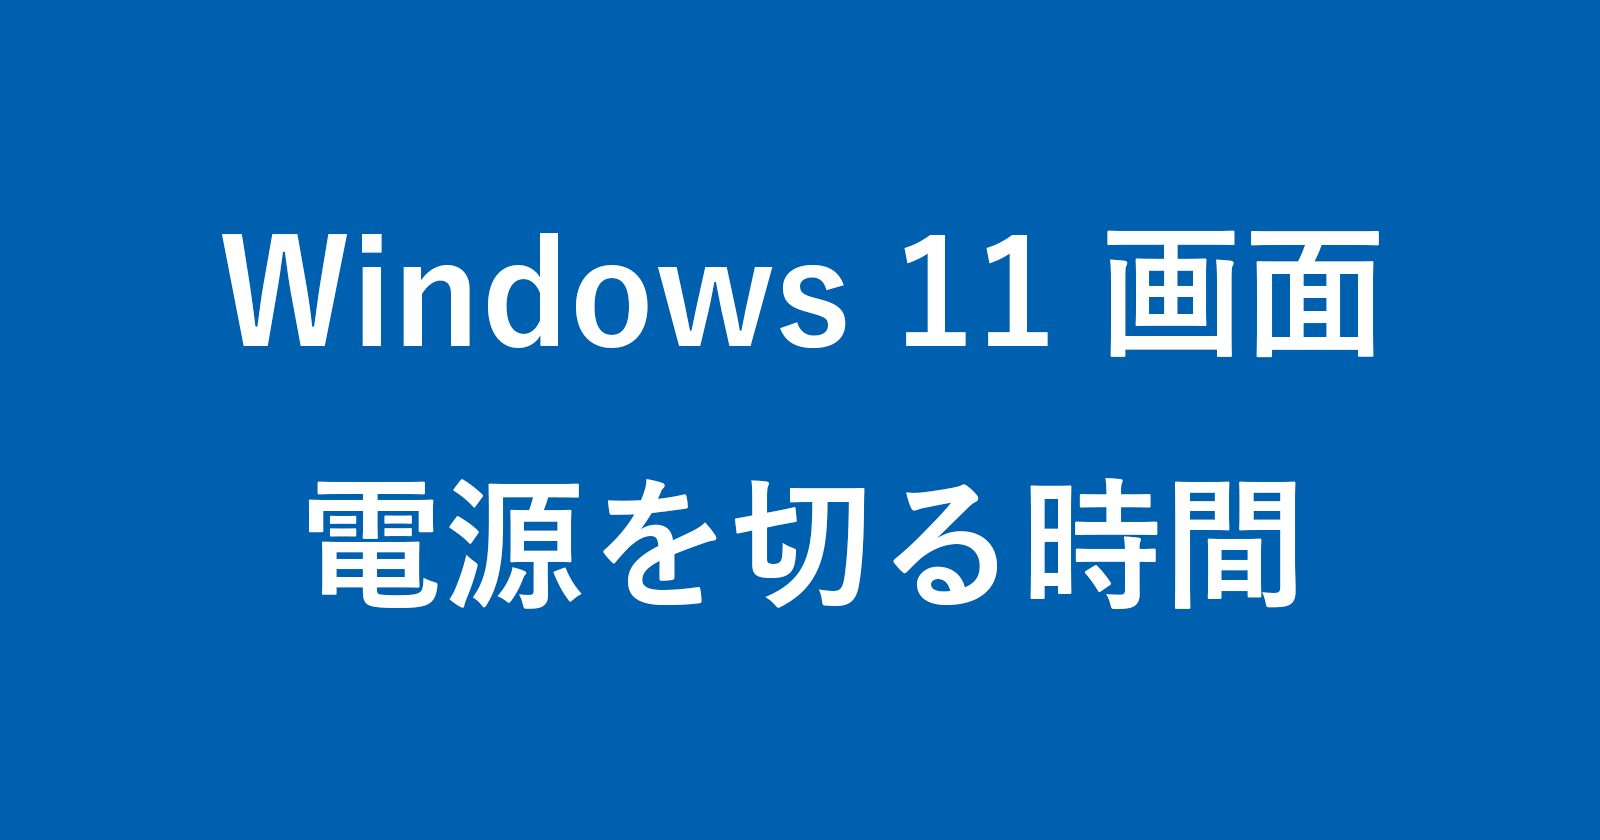 windows 11 display turn off time